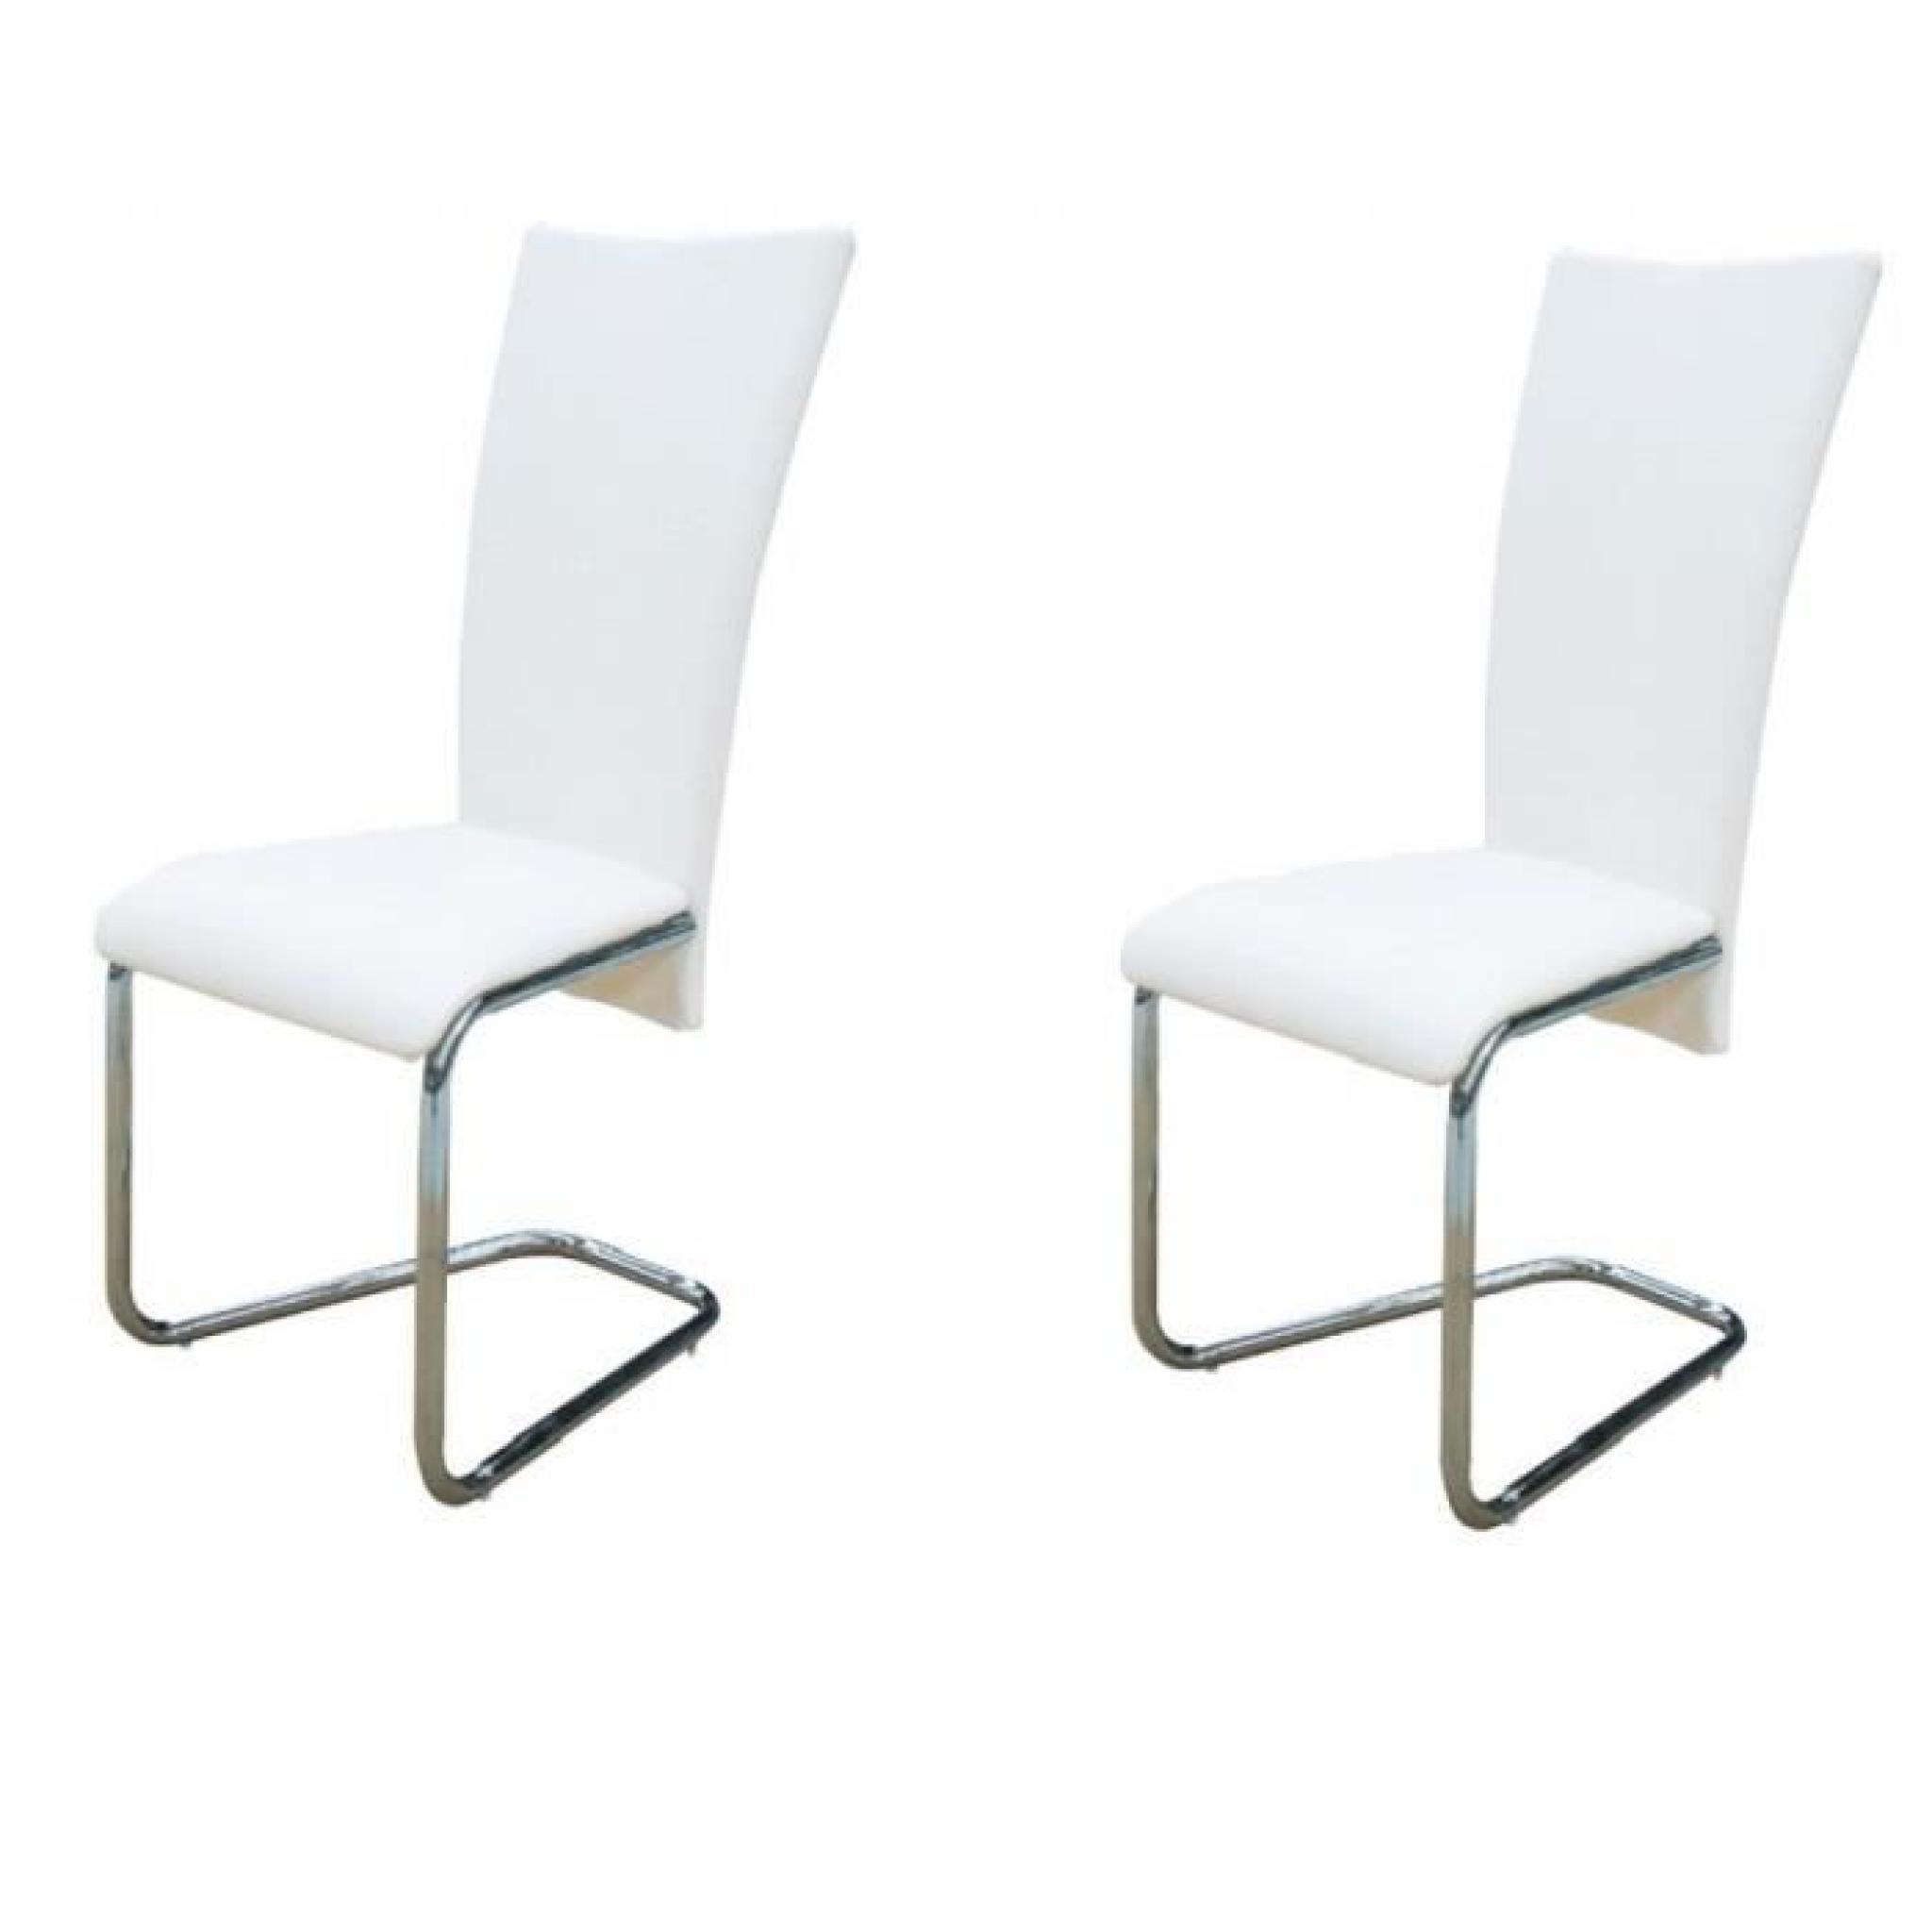 Magnifique 2 chaises ultra design blanches